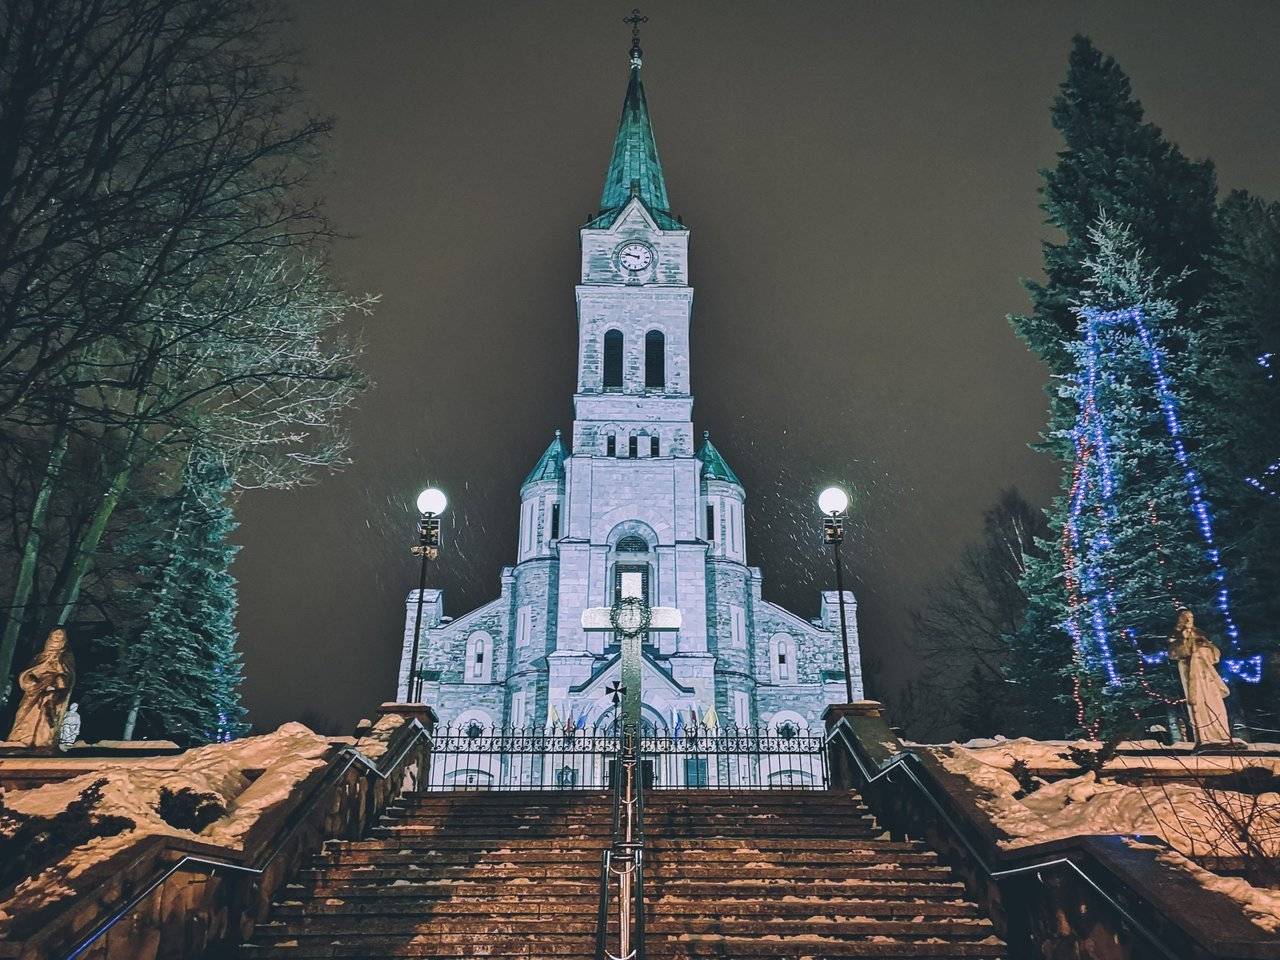   Sanktuarium Najświętszej Rodziny church in Zakopane. Photo by Alis Monte [CC BY-SA 4.0], via Connecting the Dots